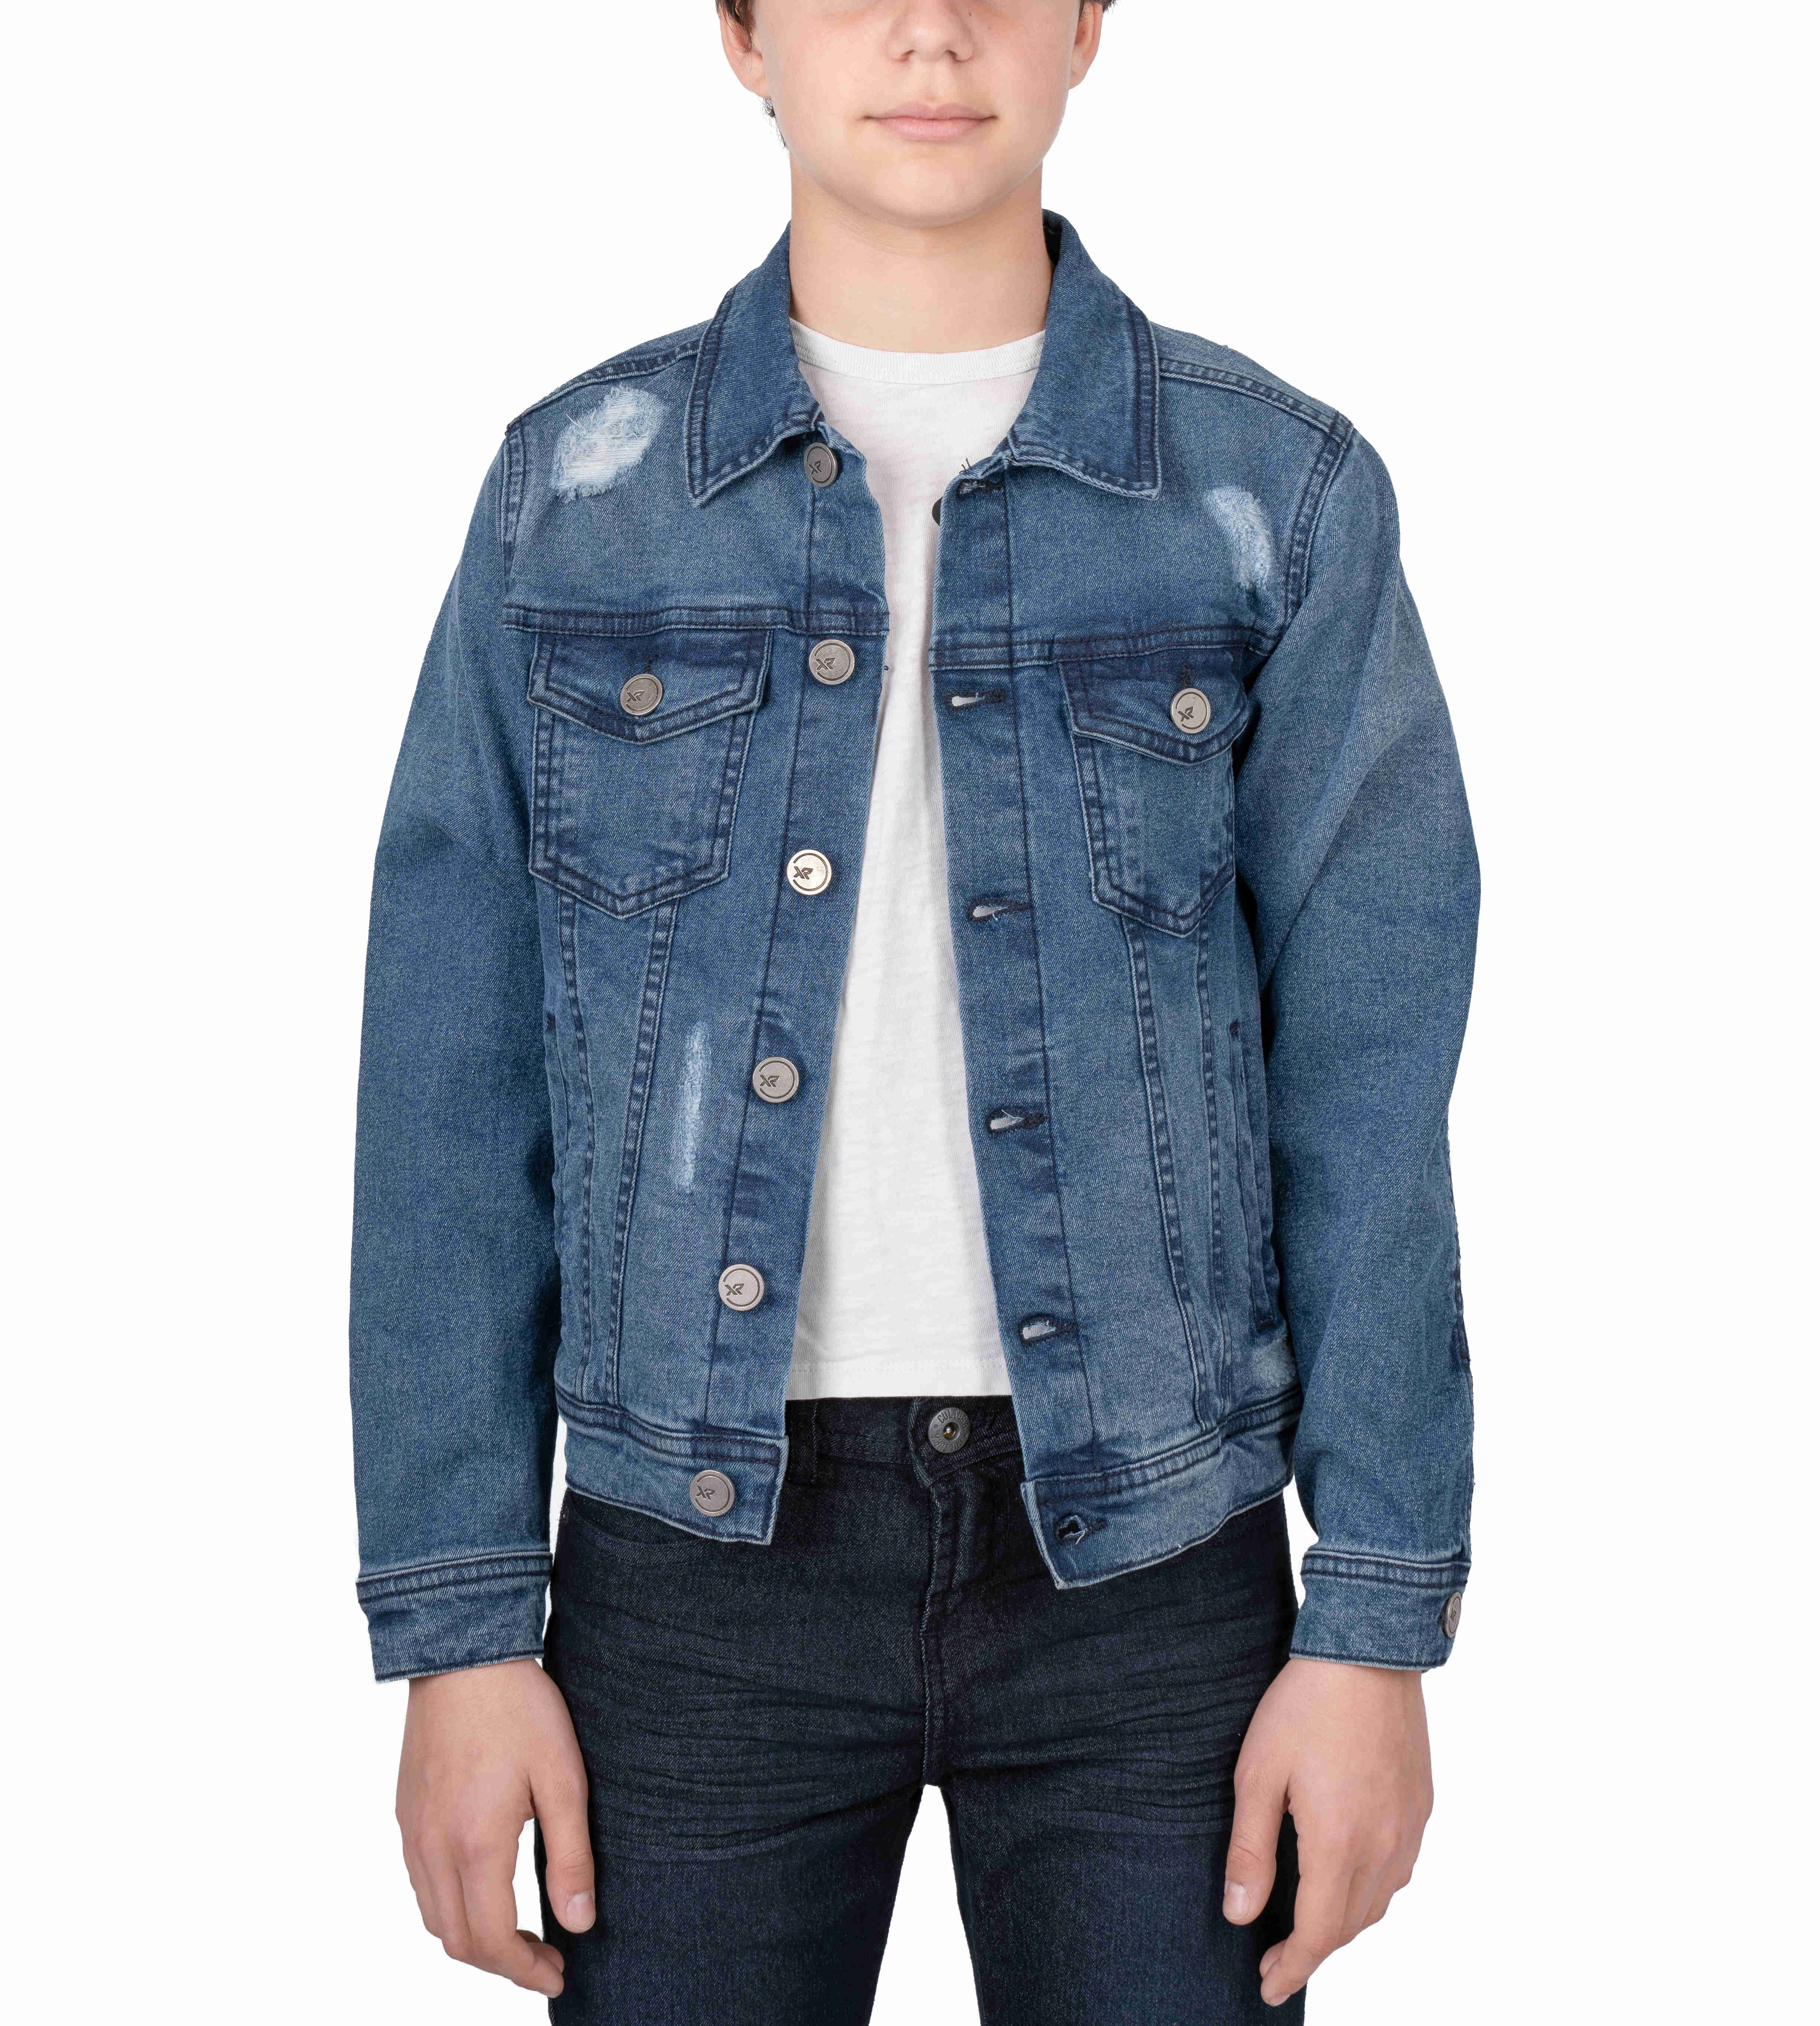 Boys Jean Jacket | Boys jean jacket, Clothes design, Jackets-atpcosmetics.com.vn